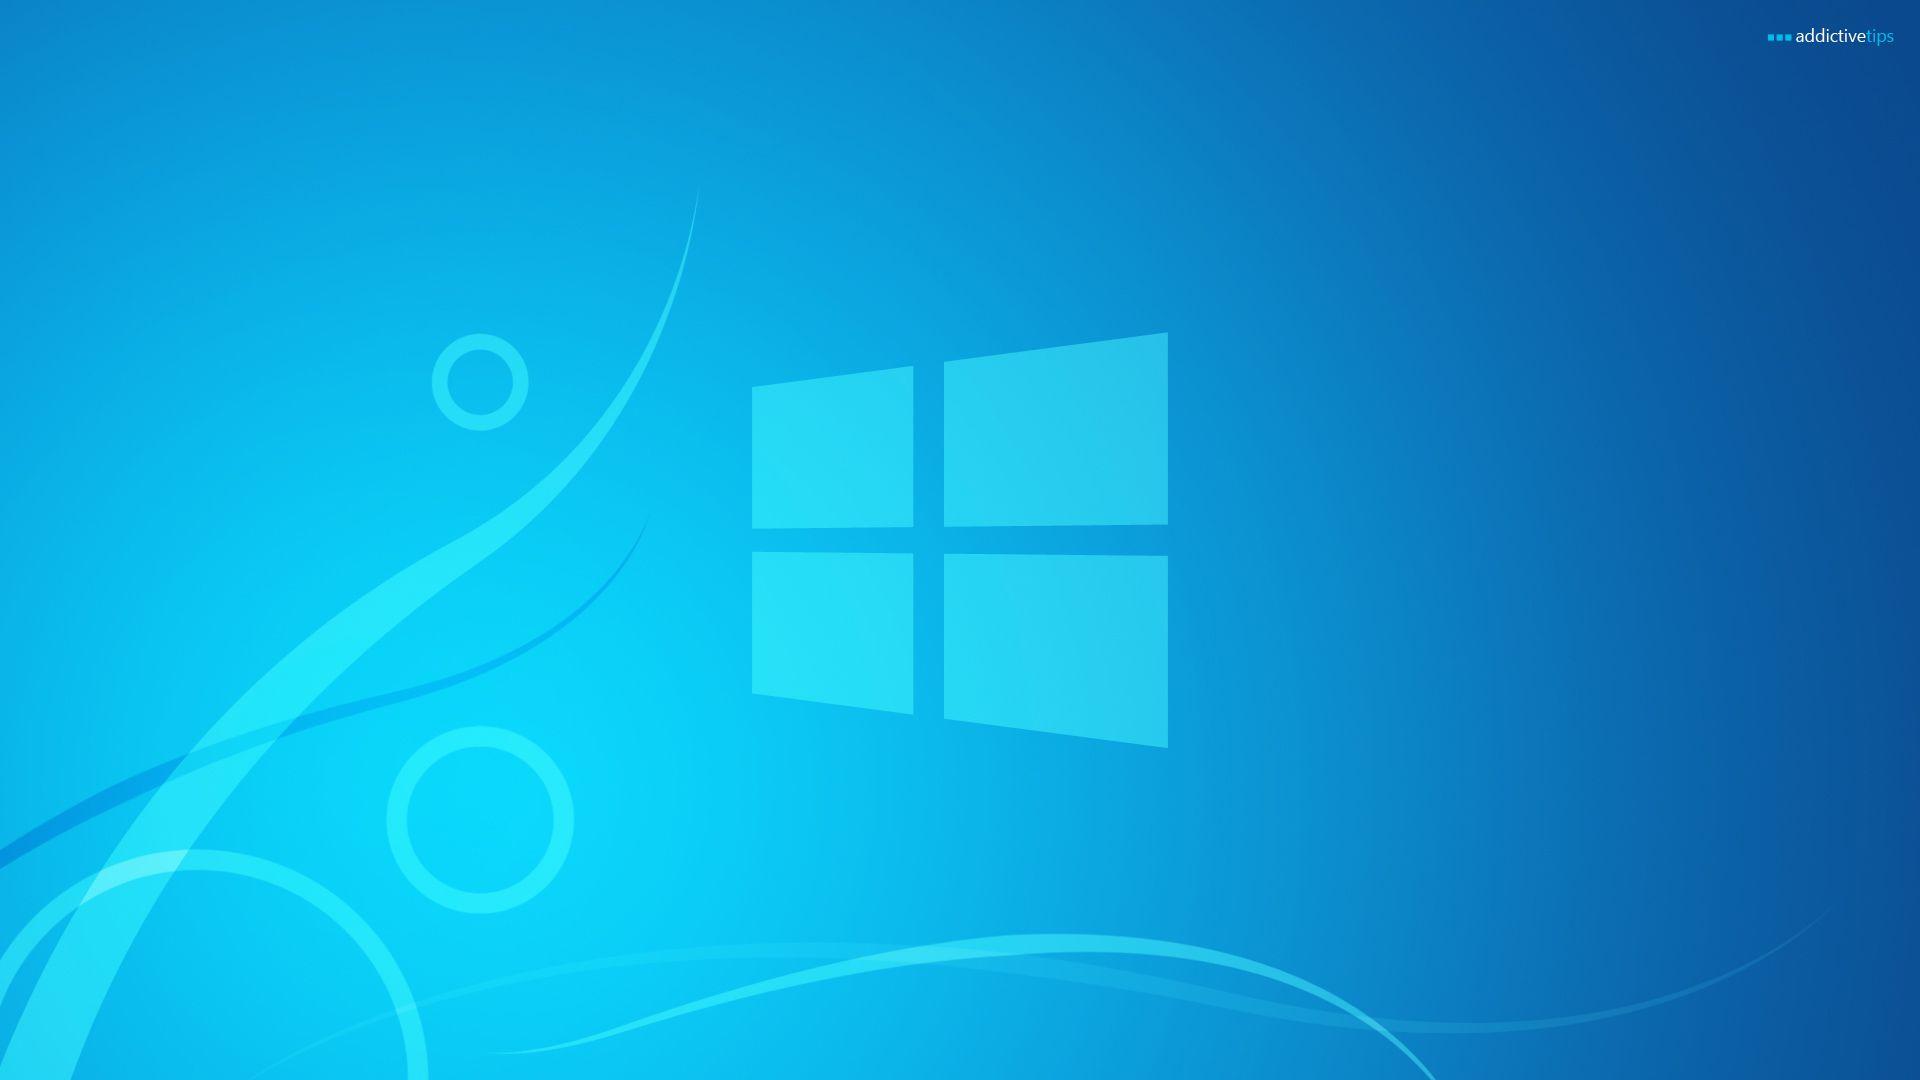 Windows 8 Official Logo - Windows 8 Official